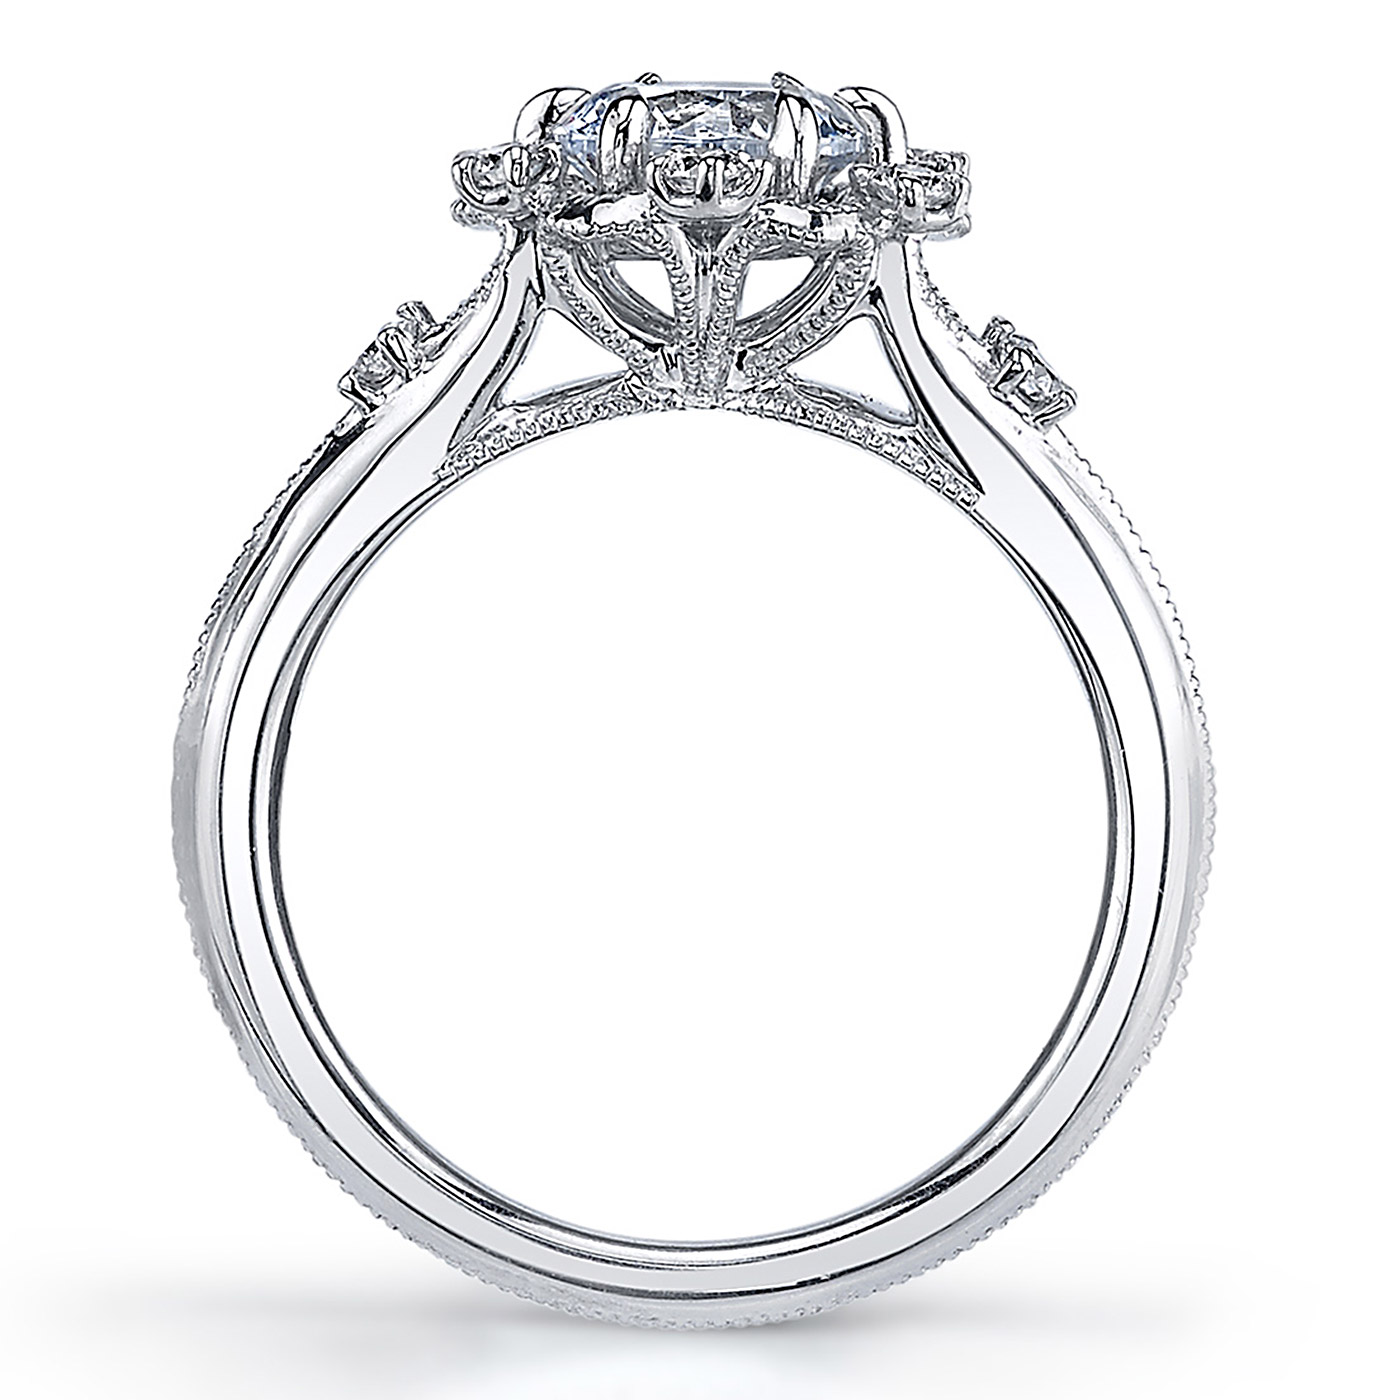 Parade Hera Bridal 18 Karat Diamond Engagement Ring R3905